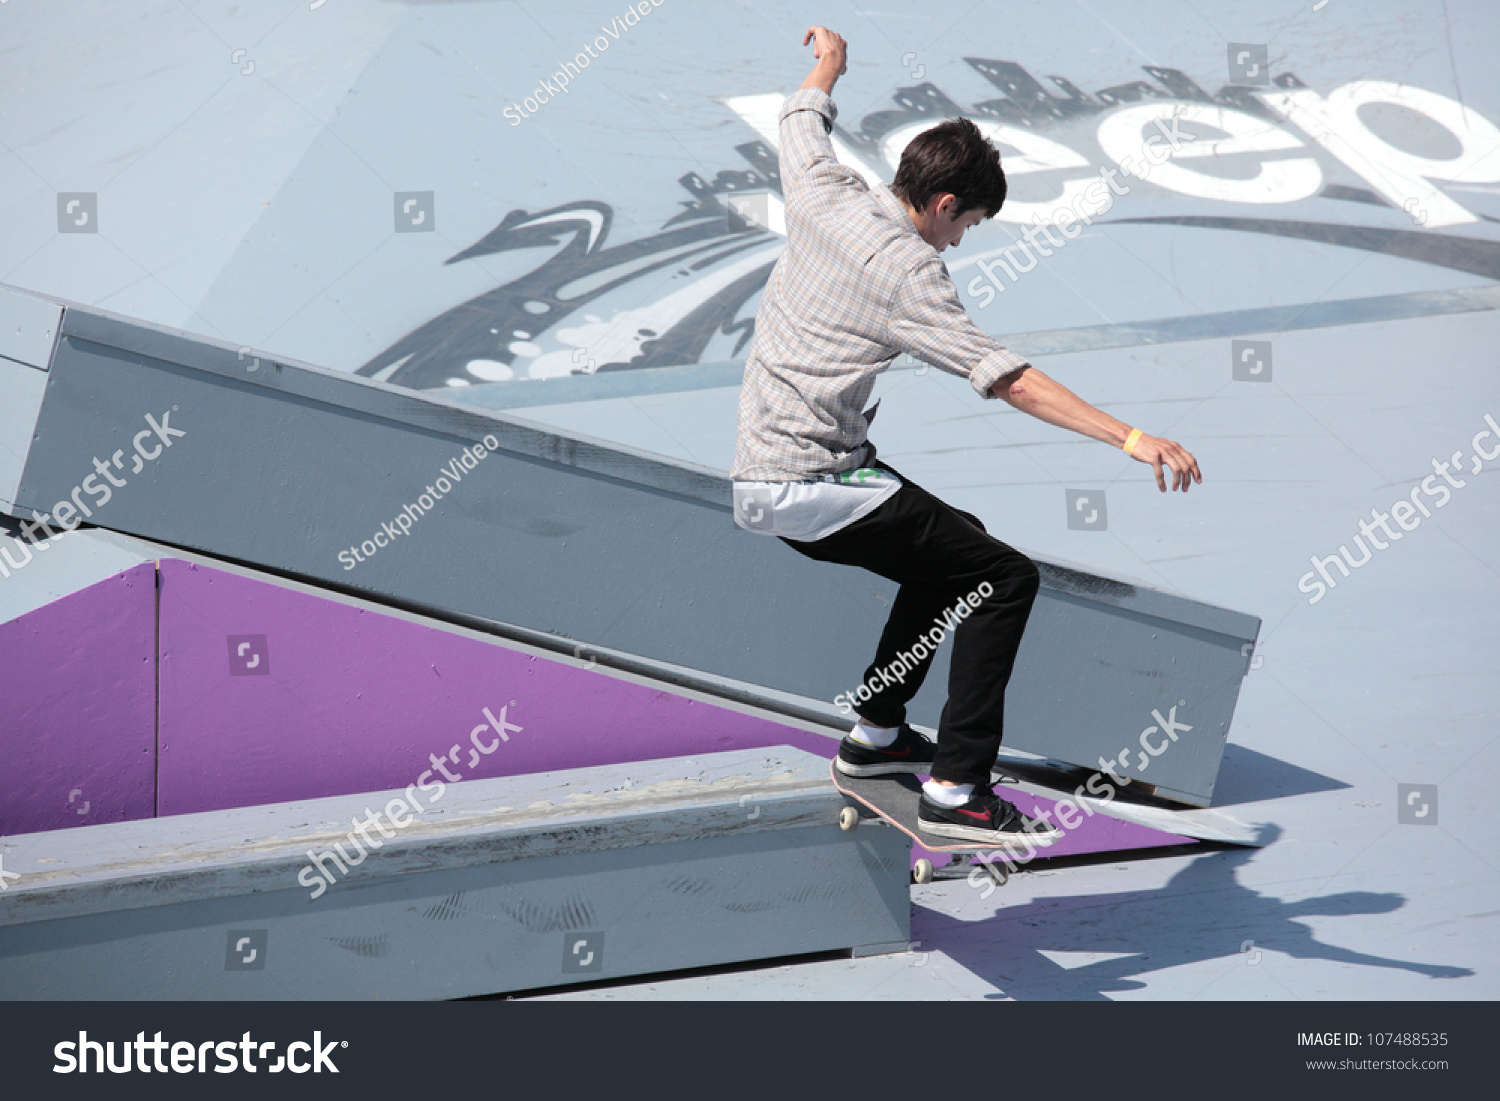 Moscow, Russia - July 8: Yegor Kaldikov, Russia, In Skateboard ...